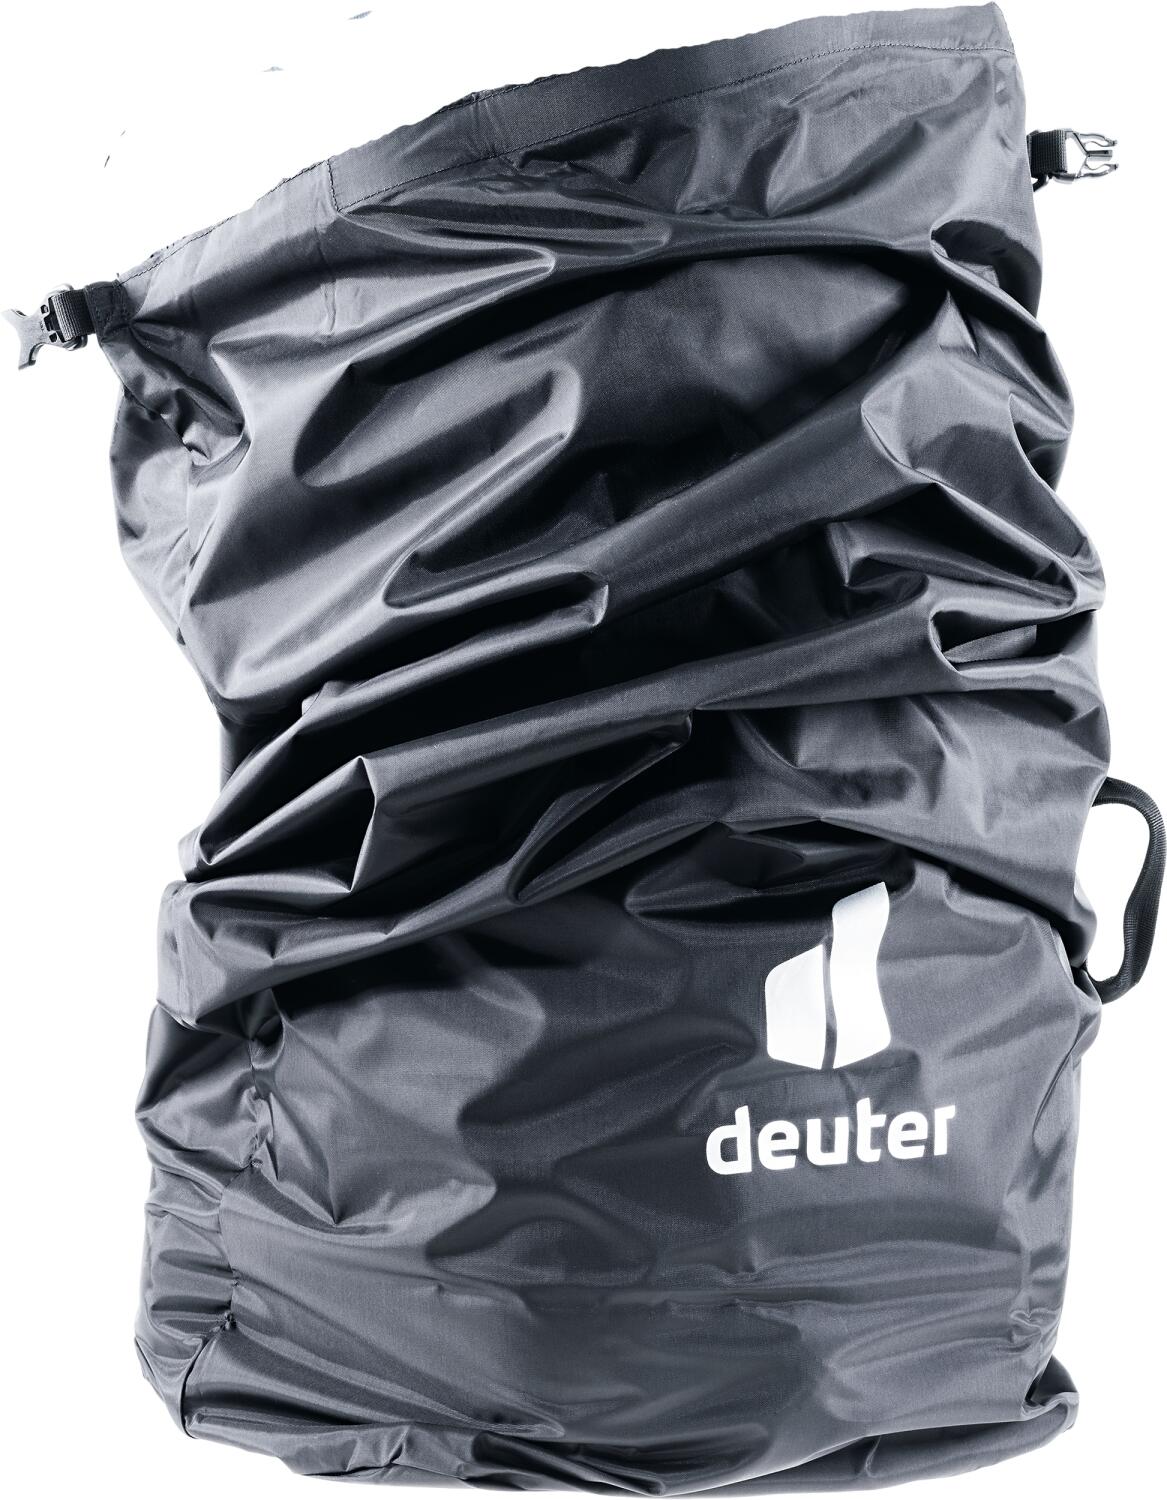 Deuter Flight Cover - Regenschutz (7000 black, 60 Liter)